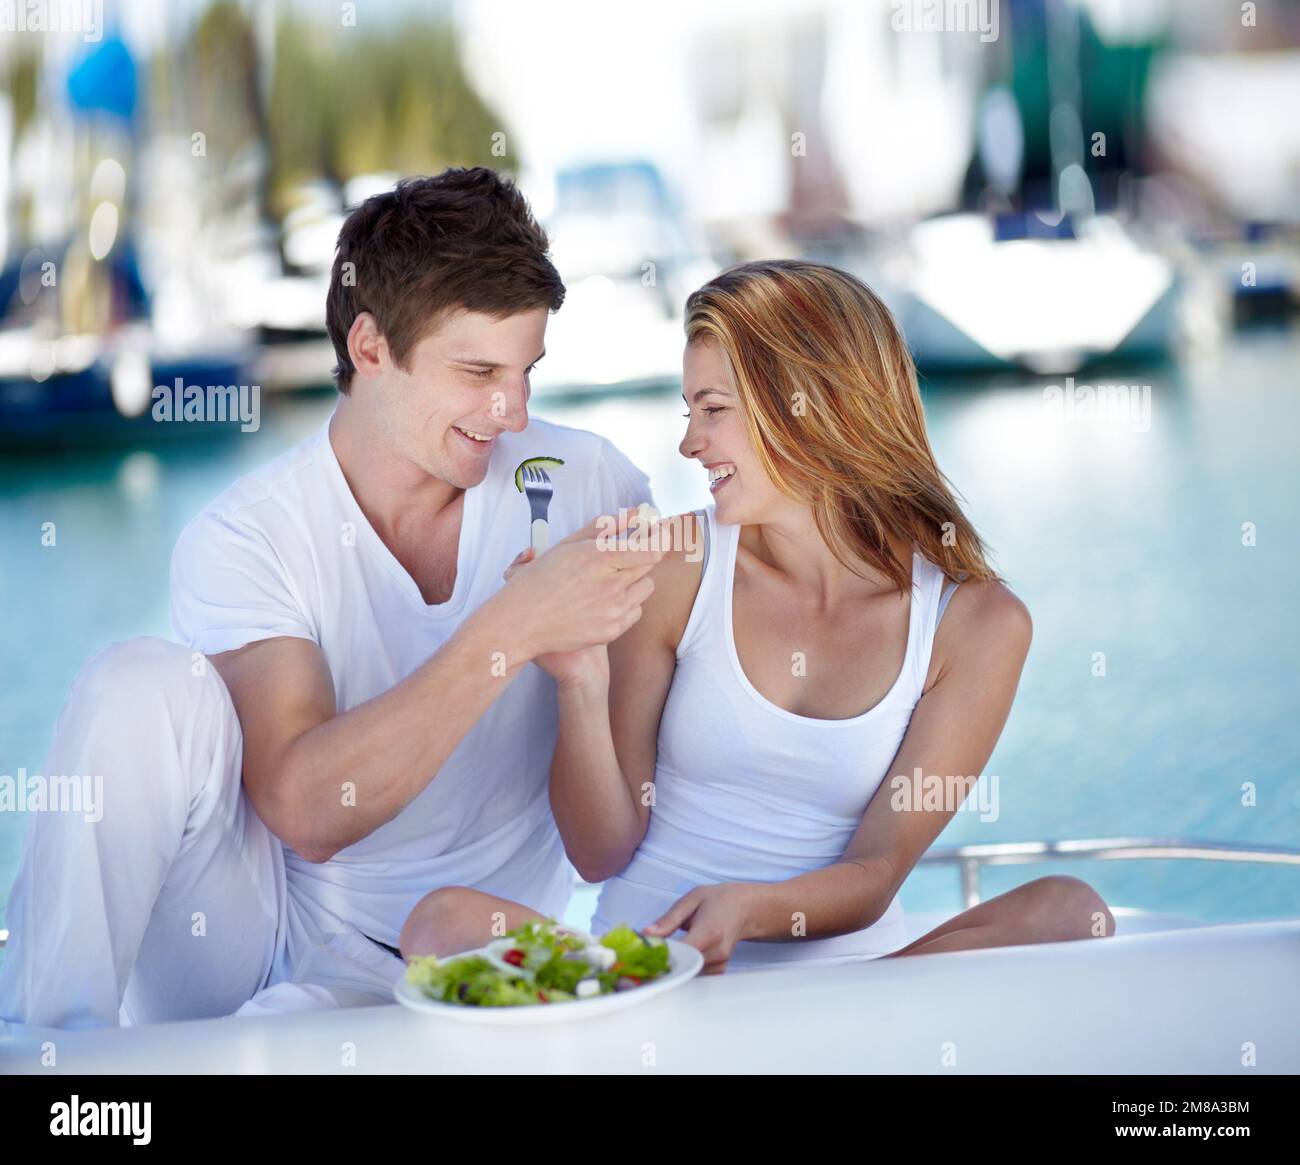 Ils aiment la nourriture saine. Jeune couple appréciant une salade fraîche ensemble. Banque D'Images